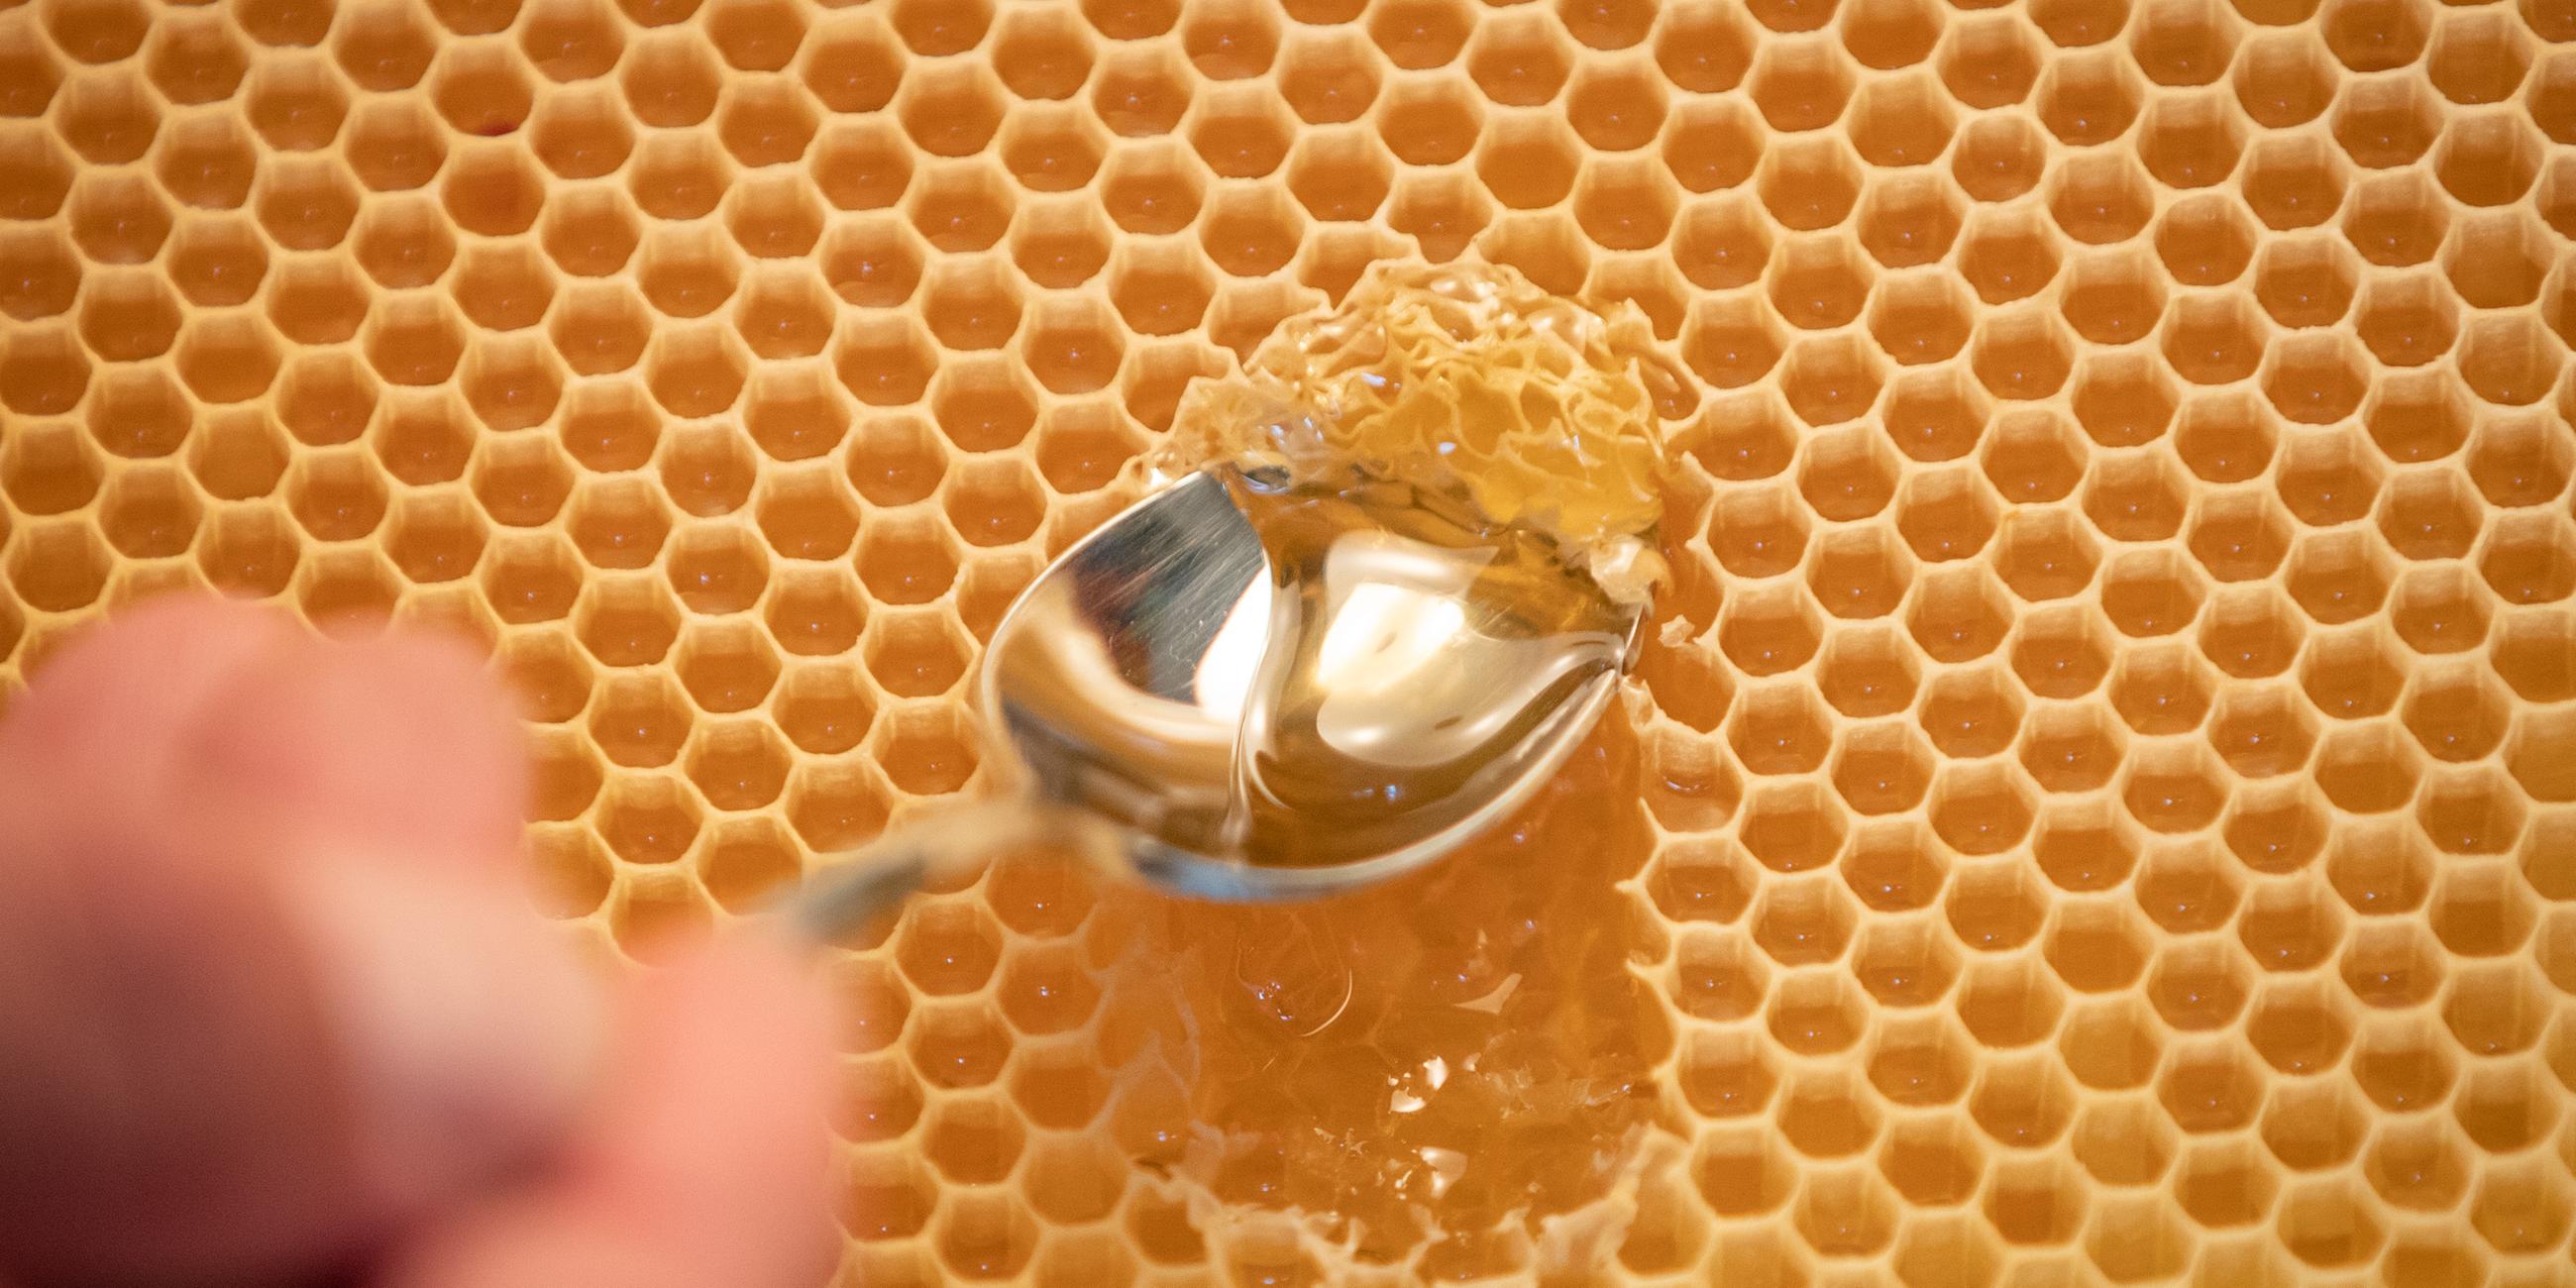 Mit einem Löffel wird Honig aus einer Bienenwabe entnommen.